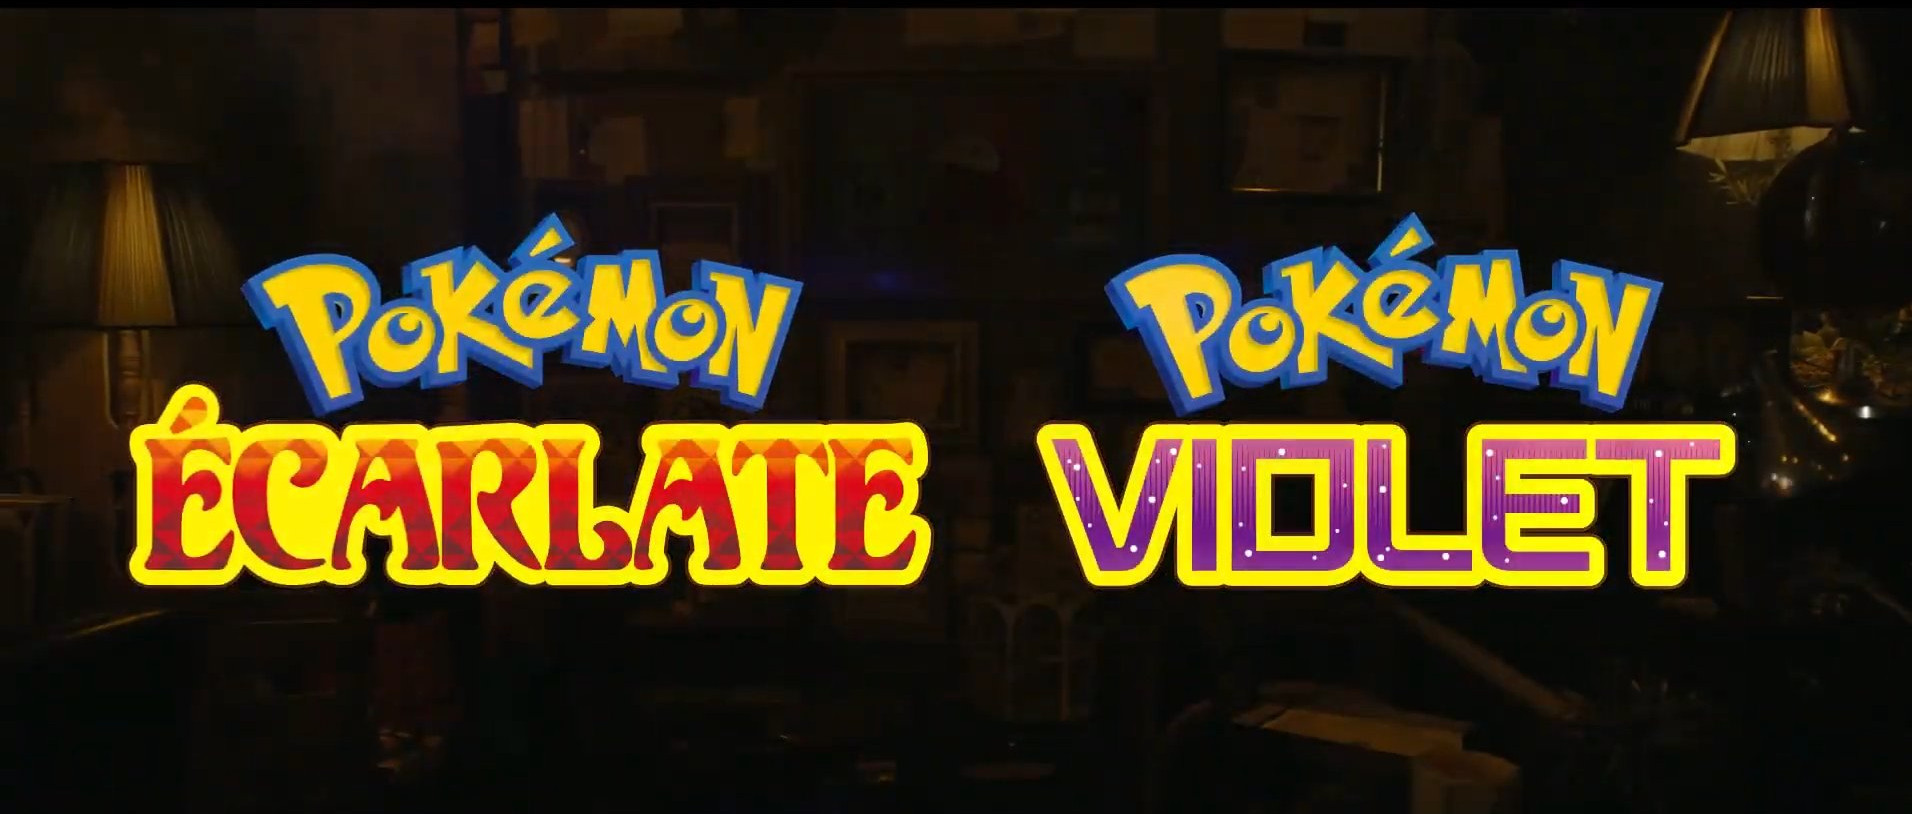 Pokémon Écarlate et Violet, date de sortie et infos des nouvelles versions Pokémon